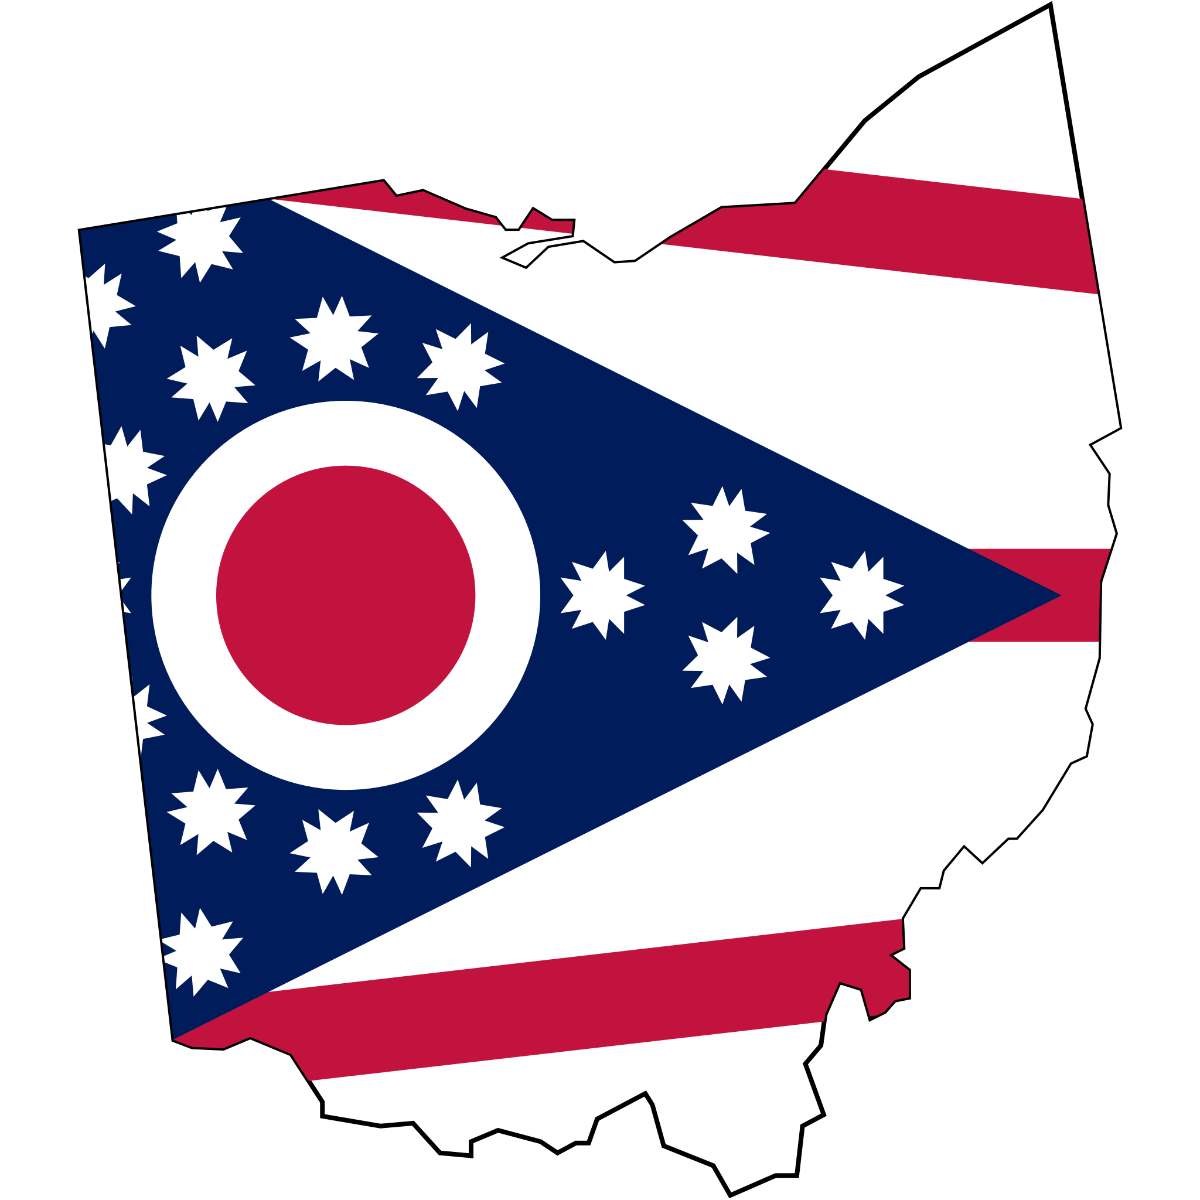 Ohio State map cutout with Ohio flag superimposed